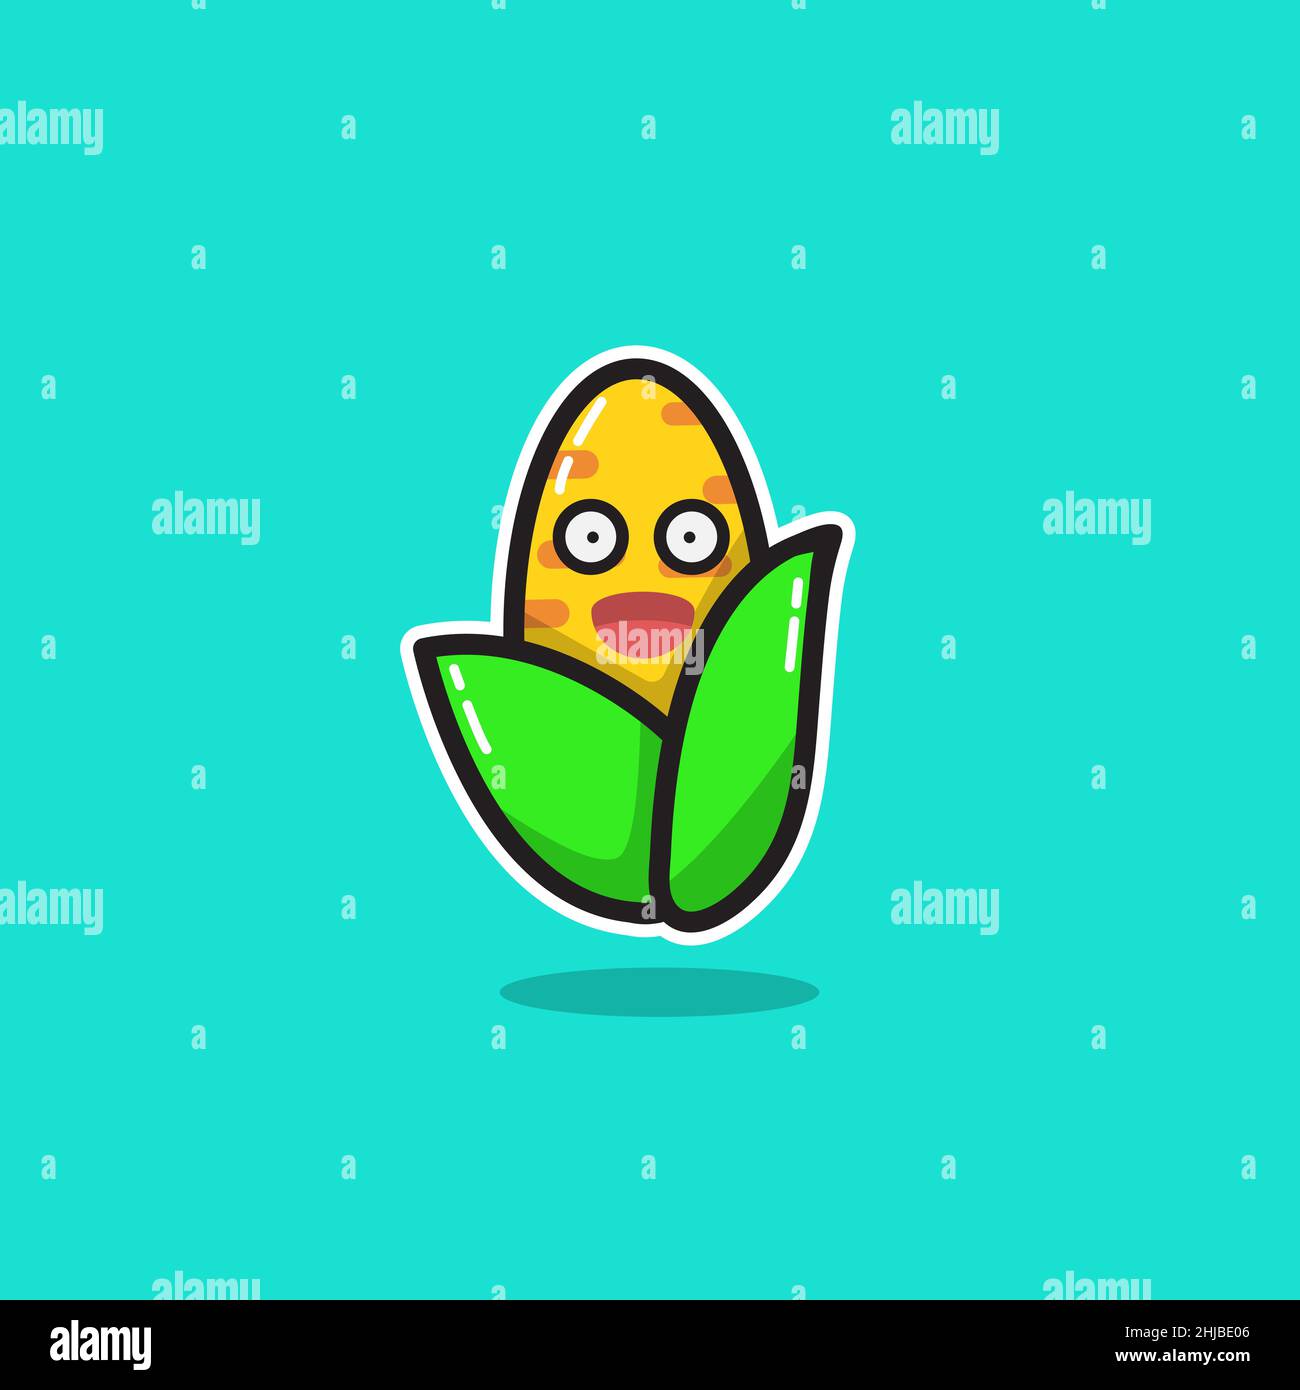 Illustrazione vettoriale del logo Corn Character Mascot Illustrazione Vettoriale